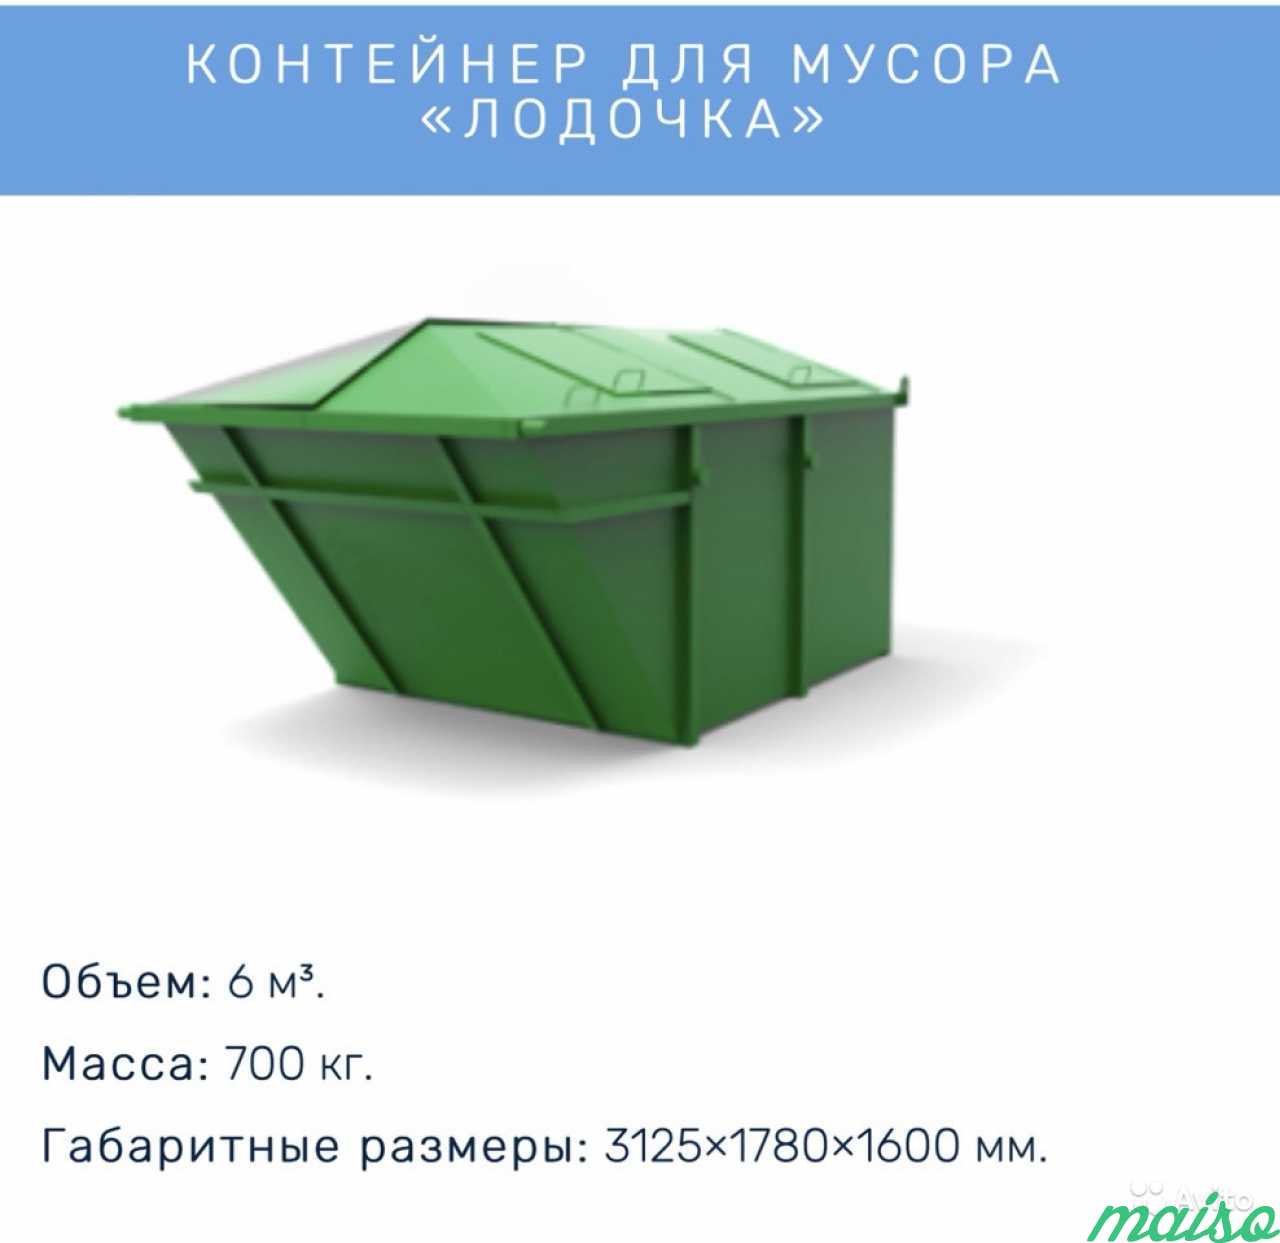 Аренда мусорных контейнеров и пухто в Санкт-Петербурге. Фото 4